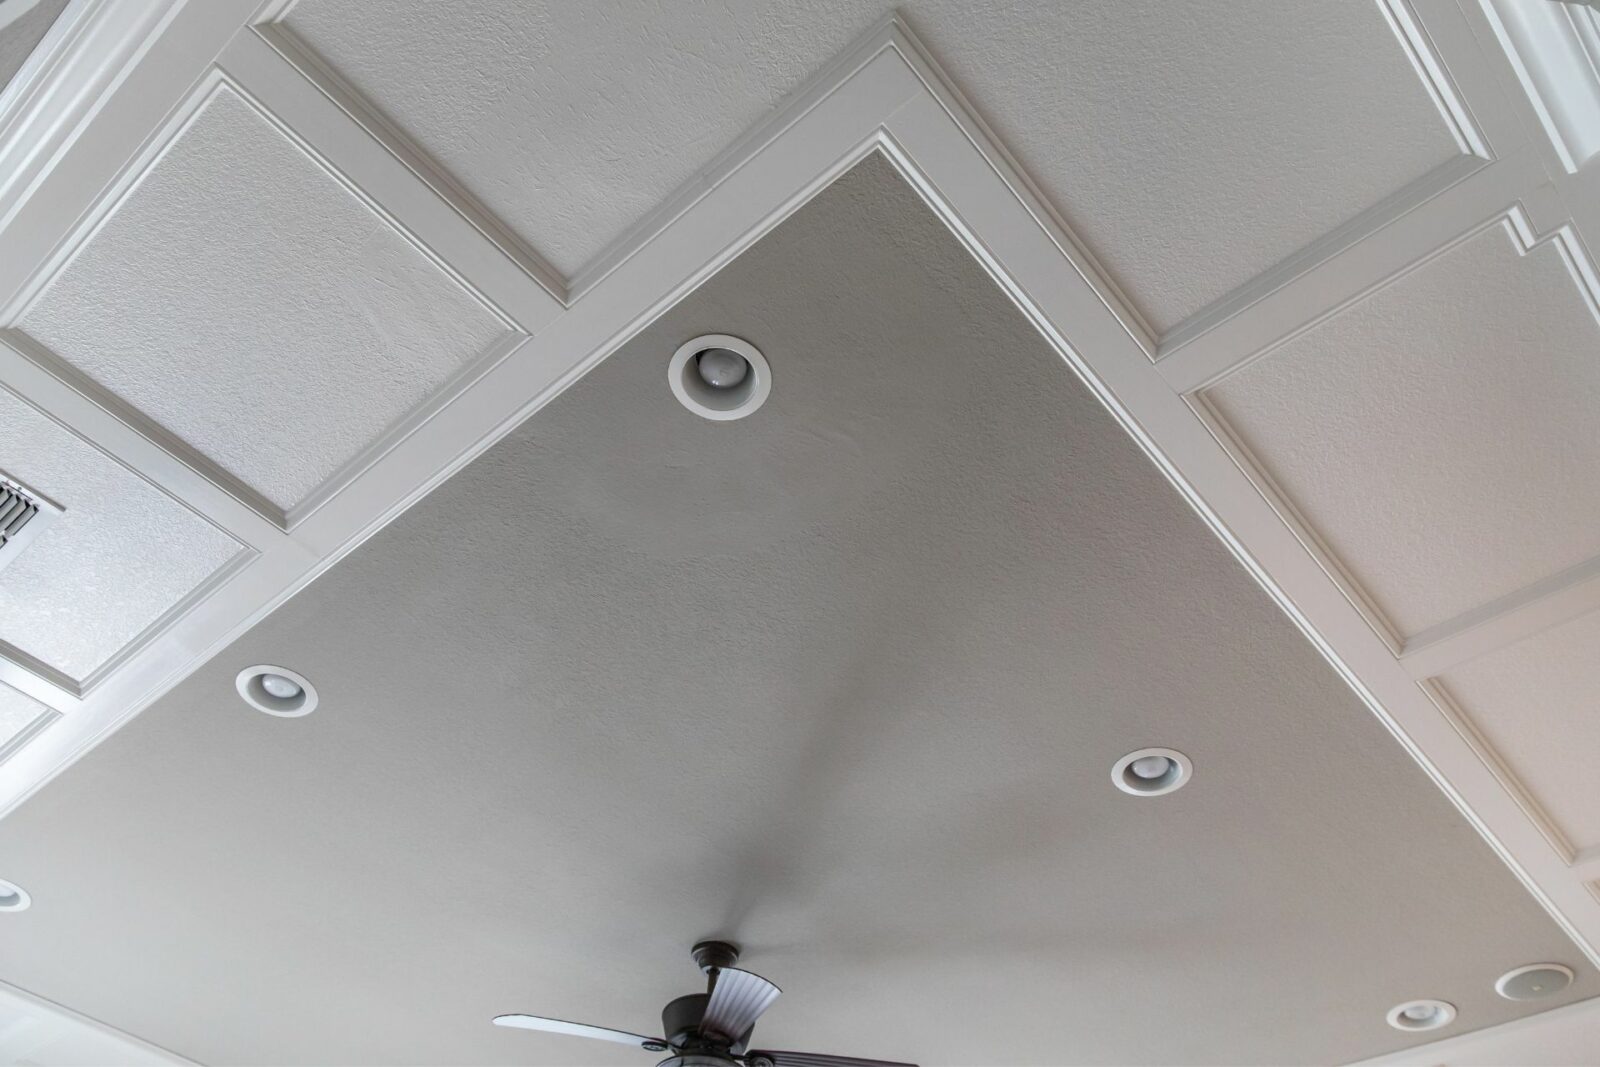 false ceiling design ideas